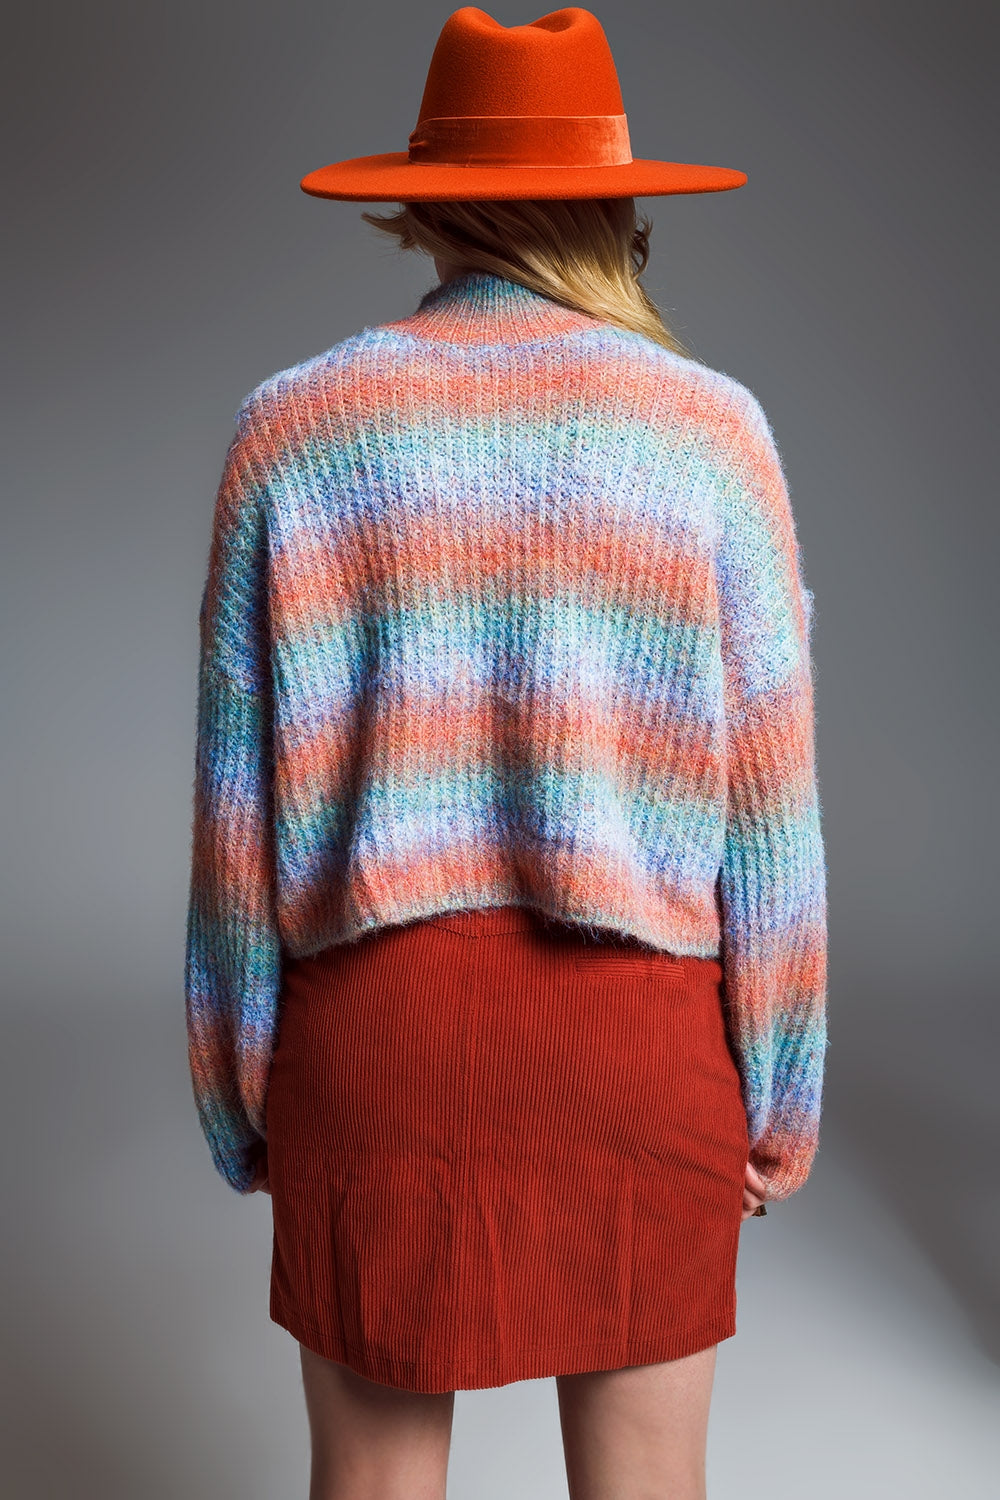 Maglione con collo alto in strisce ombreggiate in colori pastello